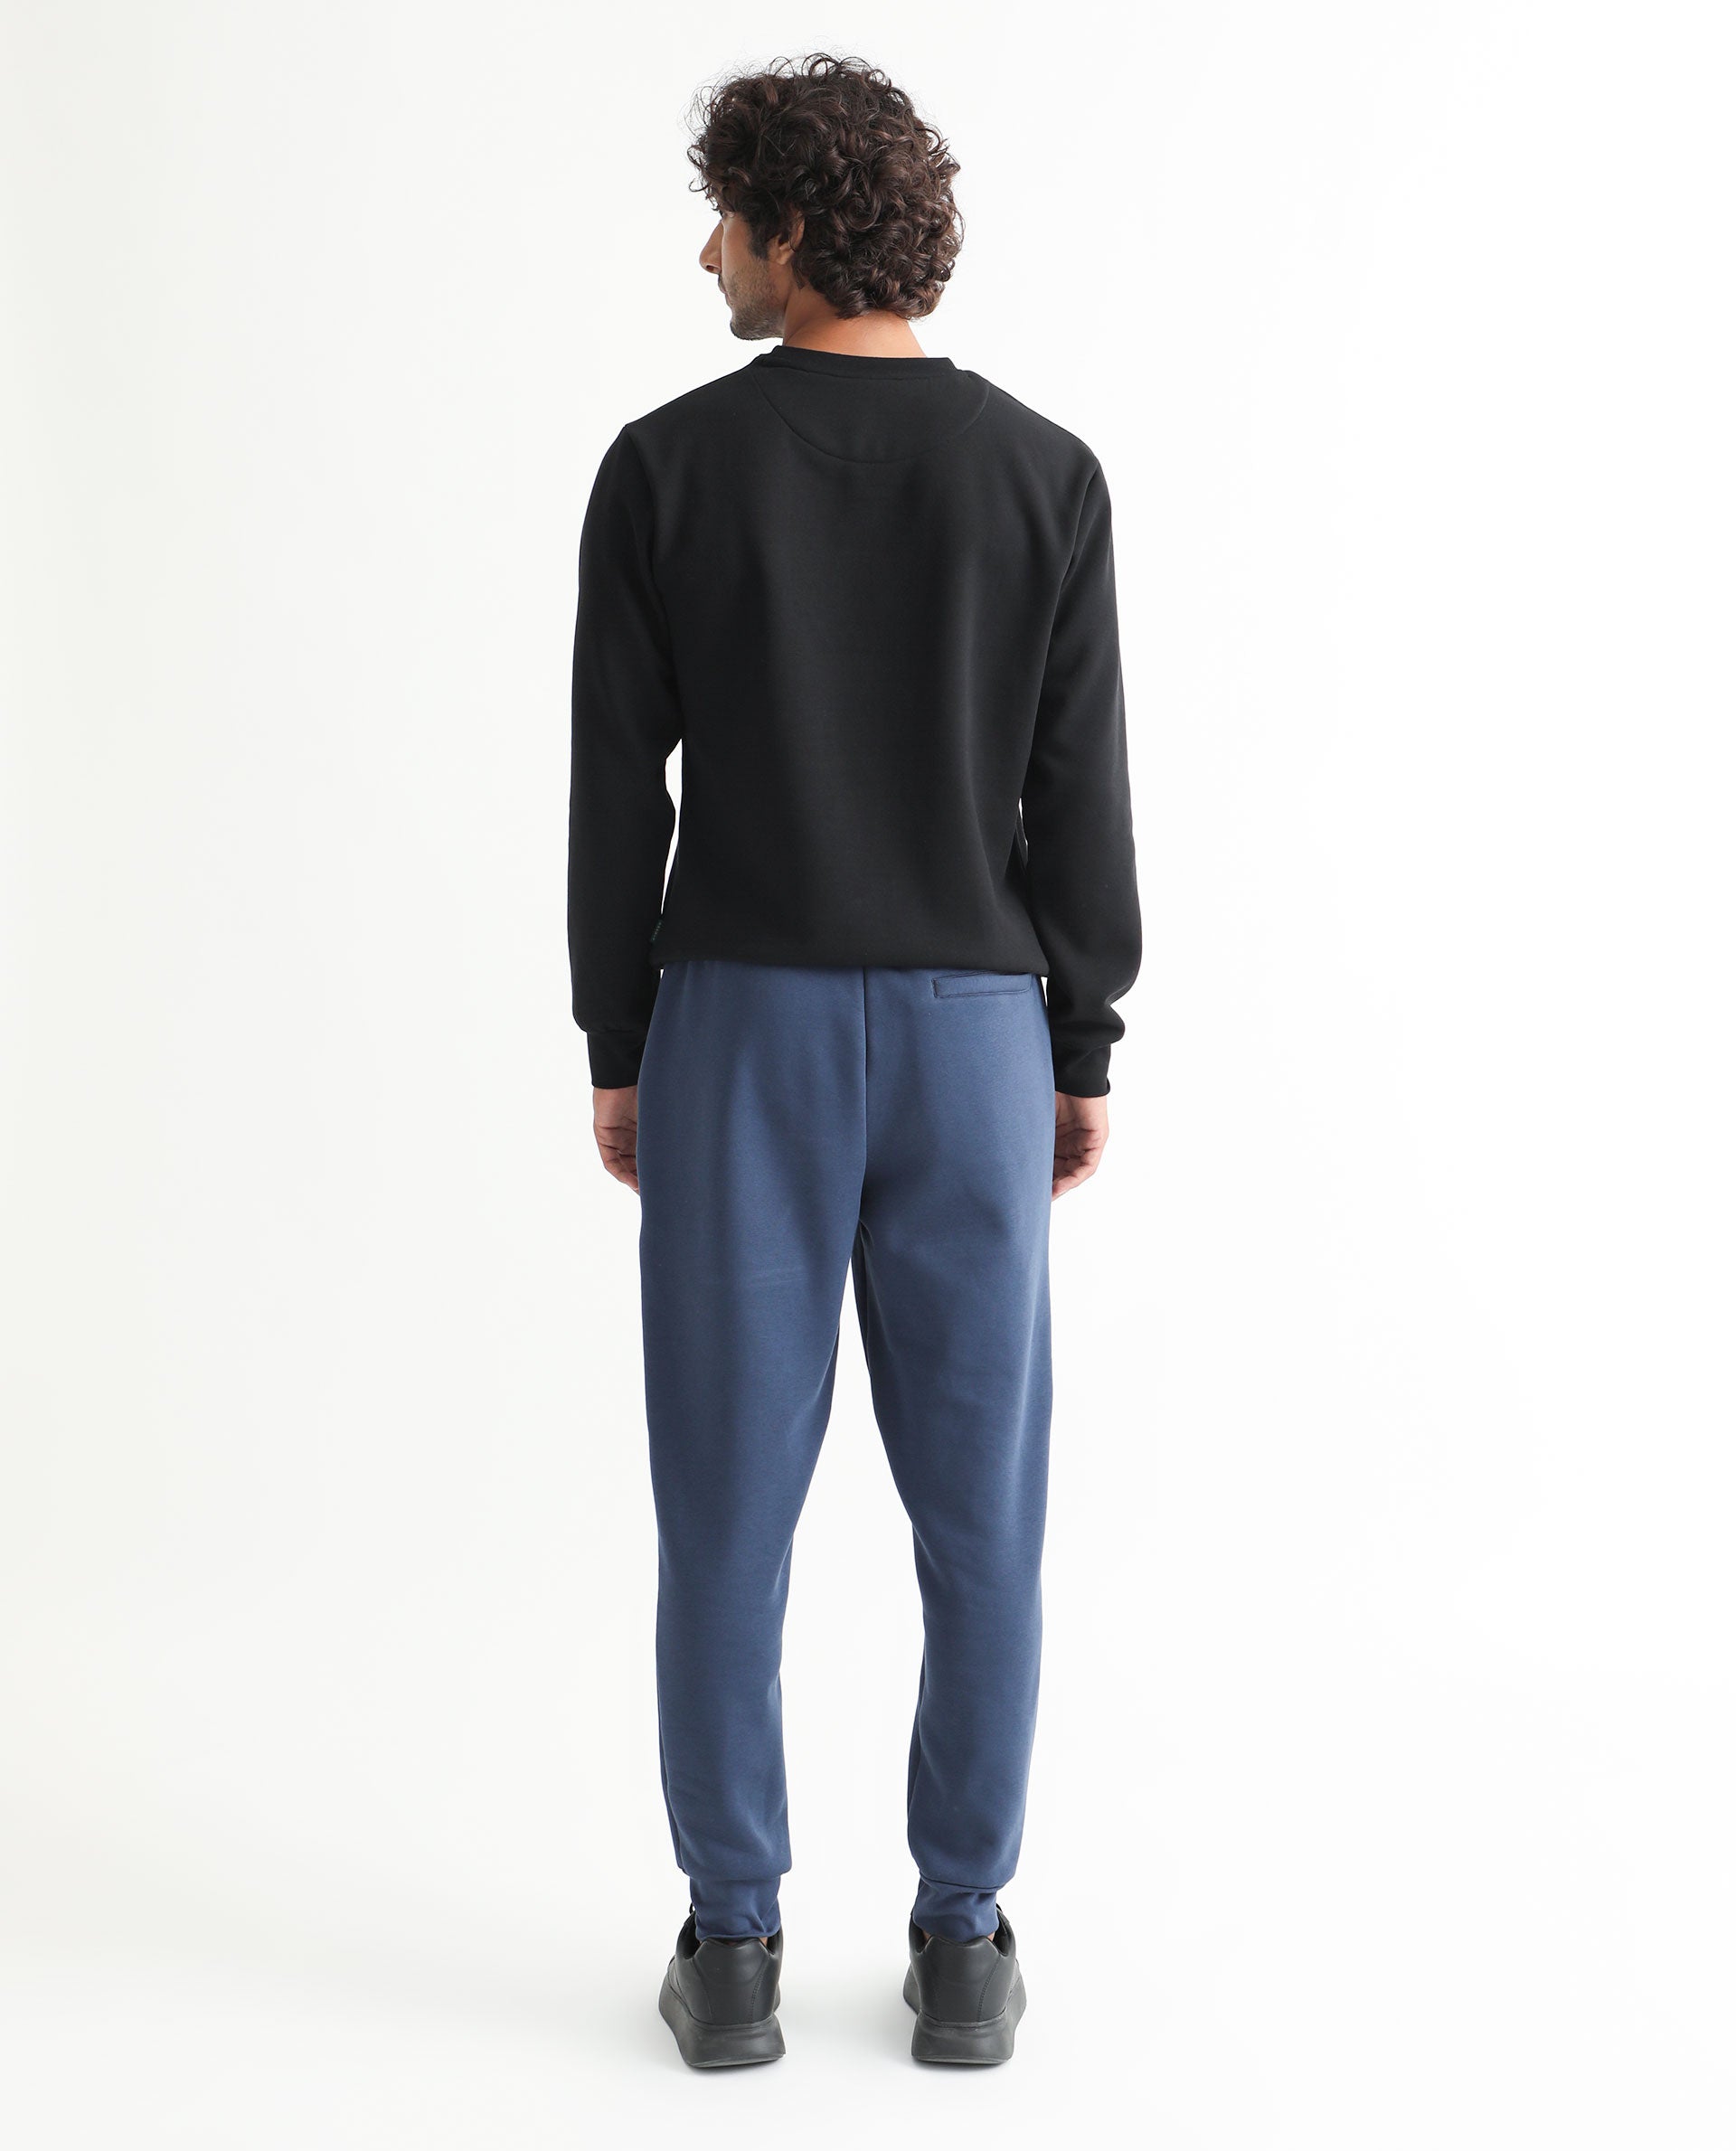 Uniqlo Men's XL Black Sweatpants Poly/Cotton